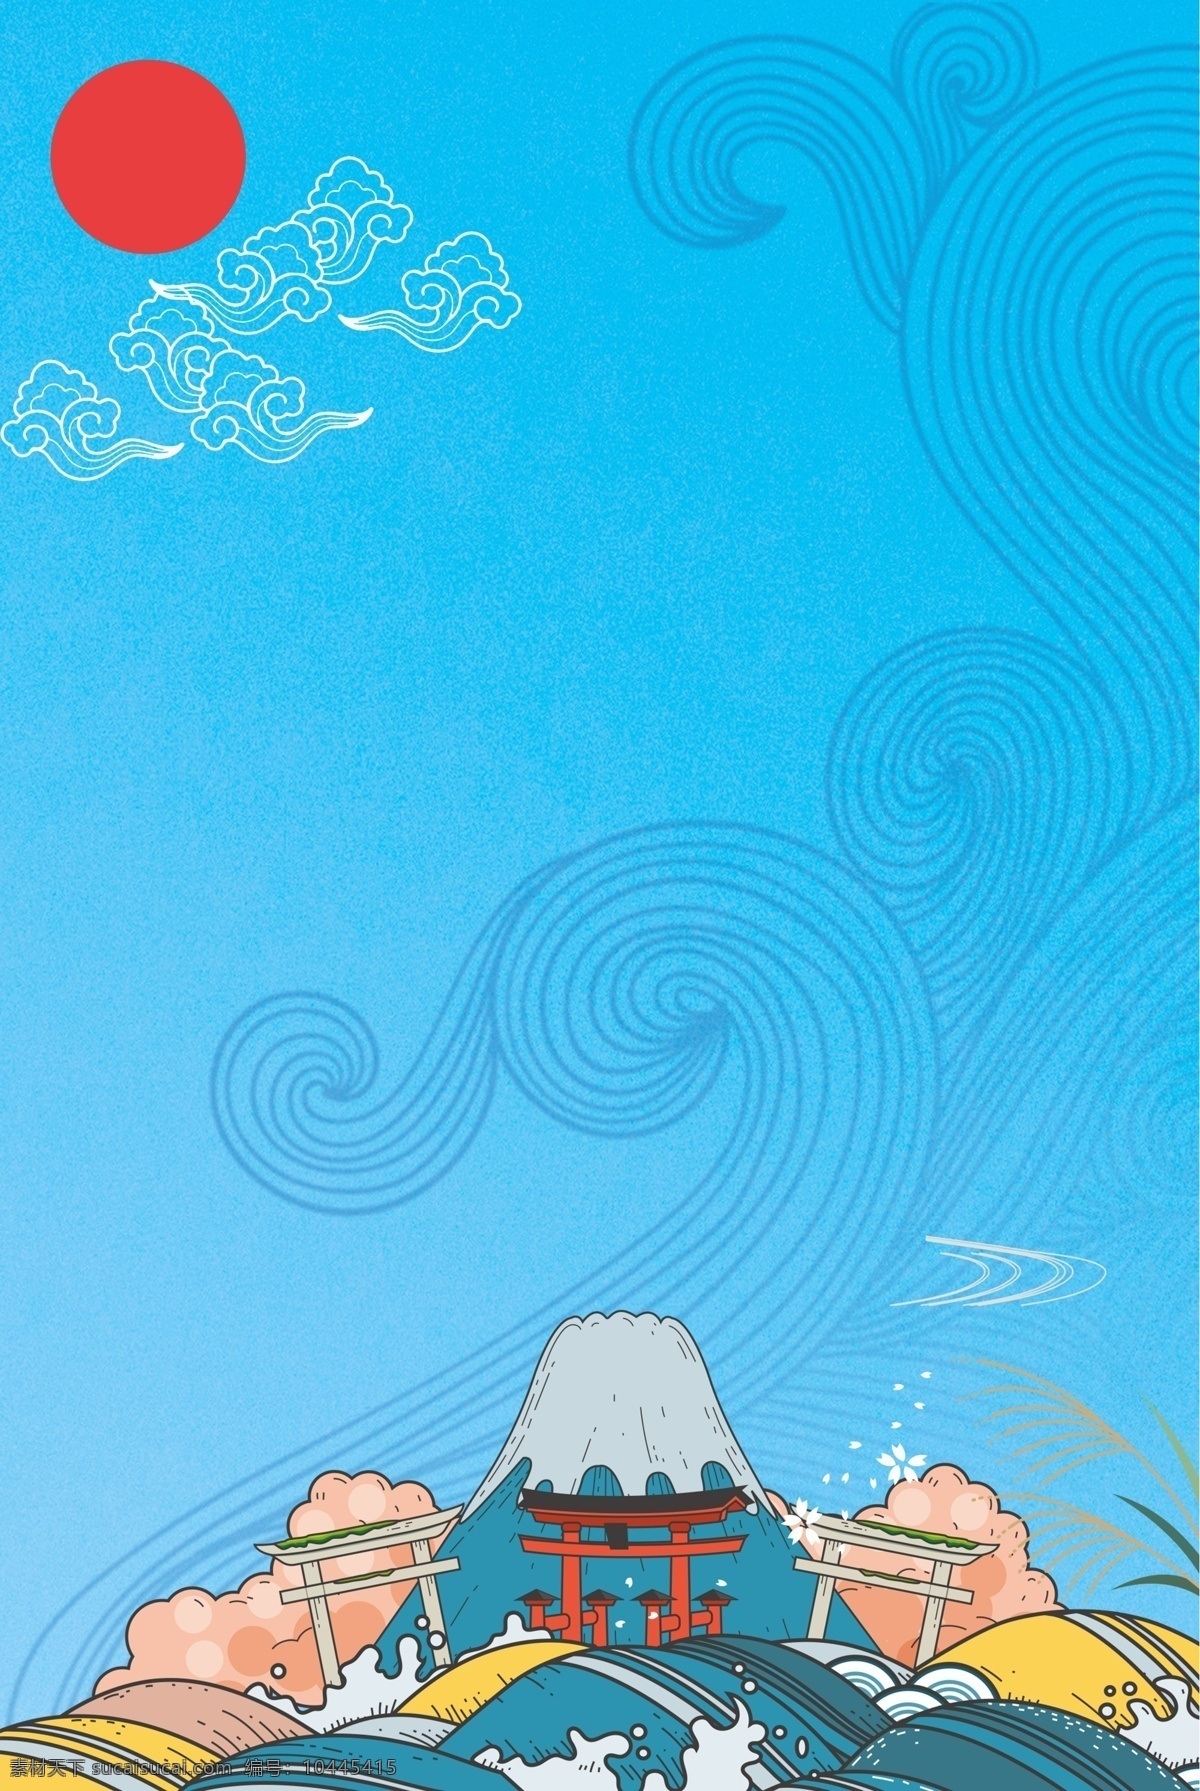 蓝色 日本旅游 广告 海报 背景 图 日本旅游海报 太阳 富士山 波浪 旅游 度假 休闲